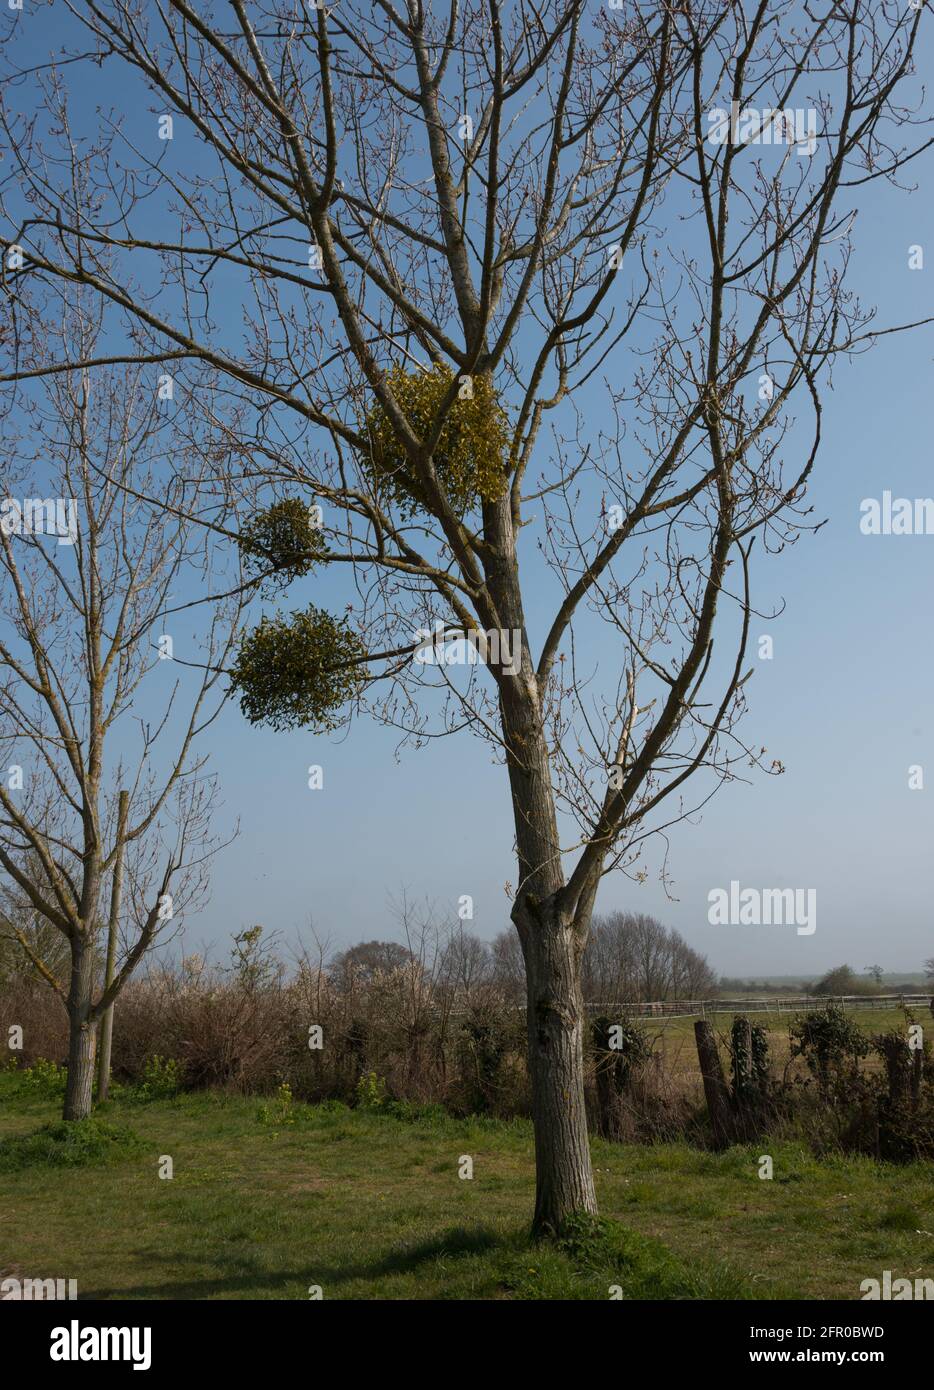 £ balls of mistletoe growing in a tree Stock Photo